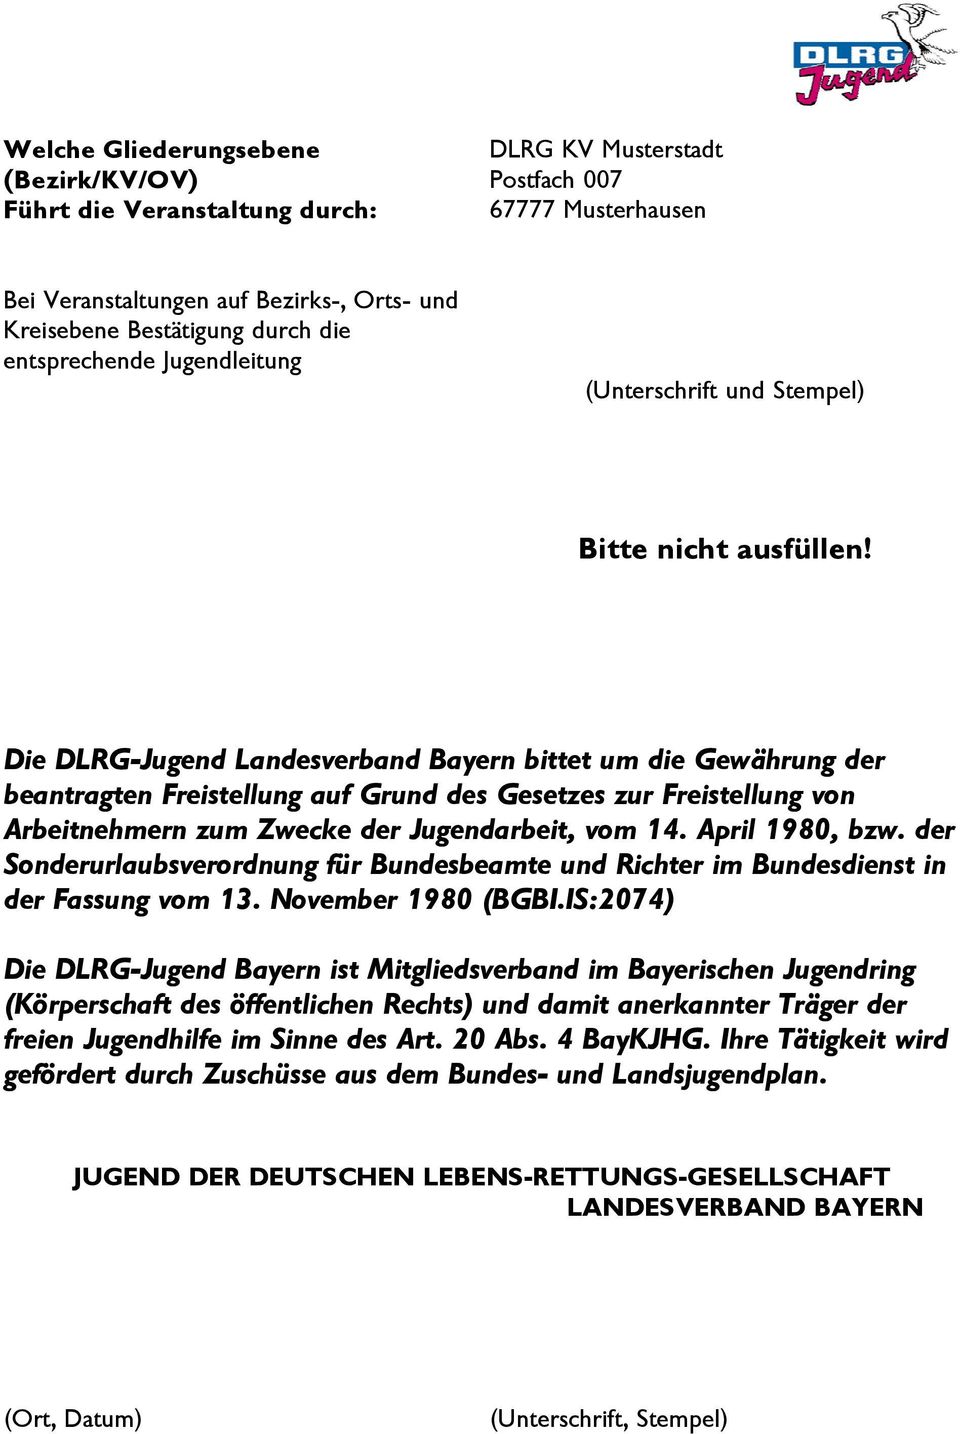 Die DLRG-Jugend Landesverband Bayern bittet um die Gewährung der beantragten Freistellung auf Grund des Gesetzes zur Freistellung von Arbeitnehmern zum Zwecke der Jugendarbeit, vom 14.